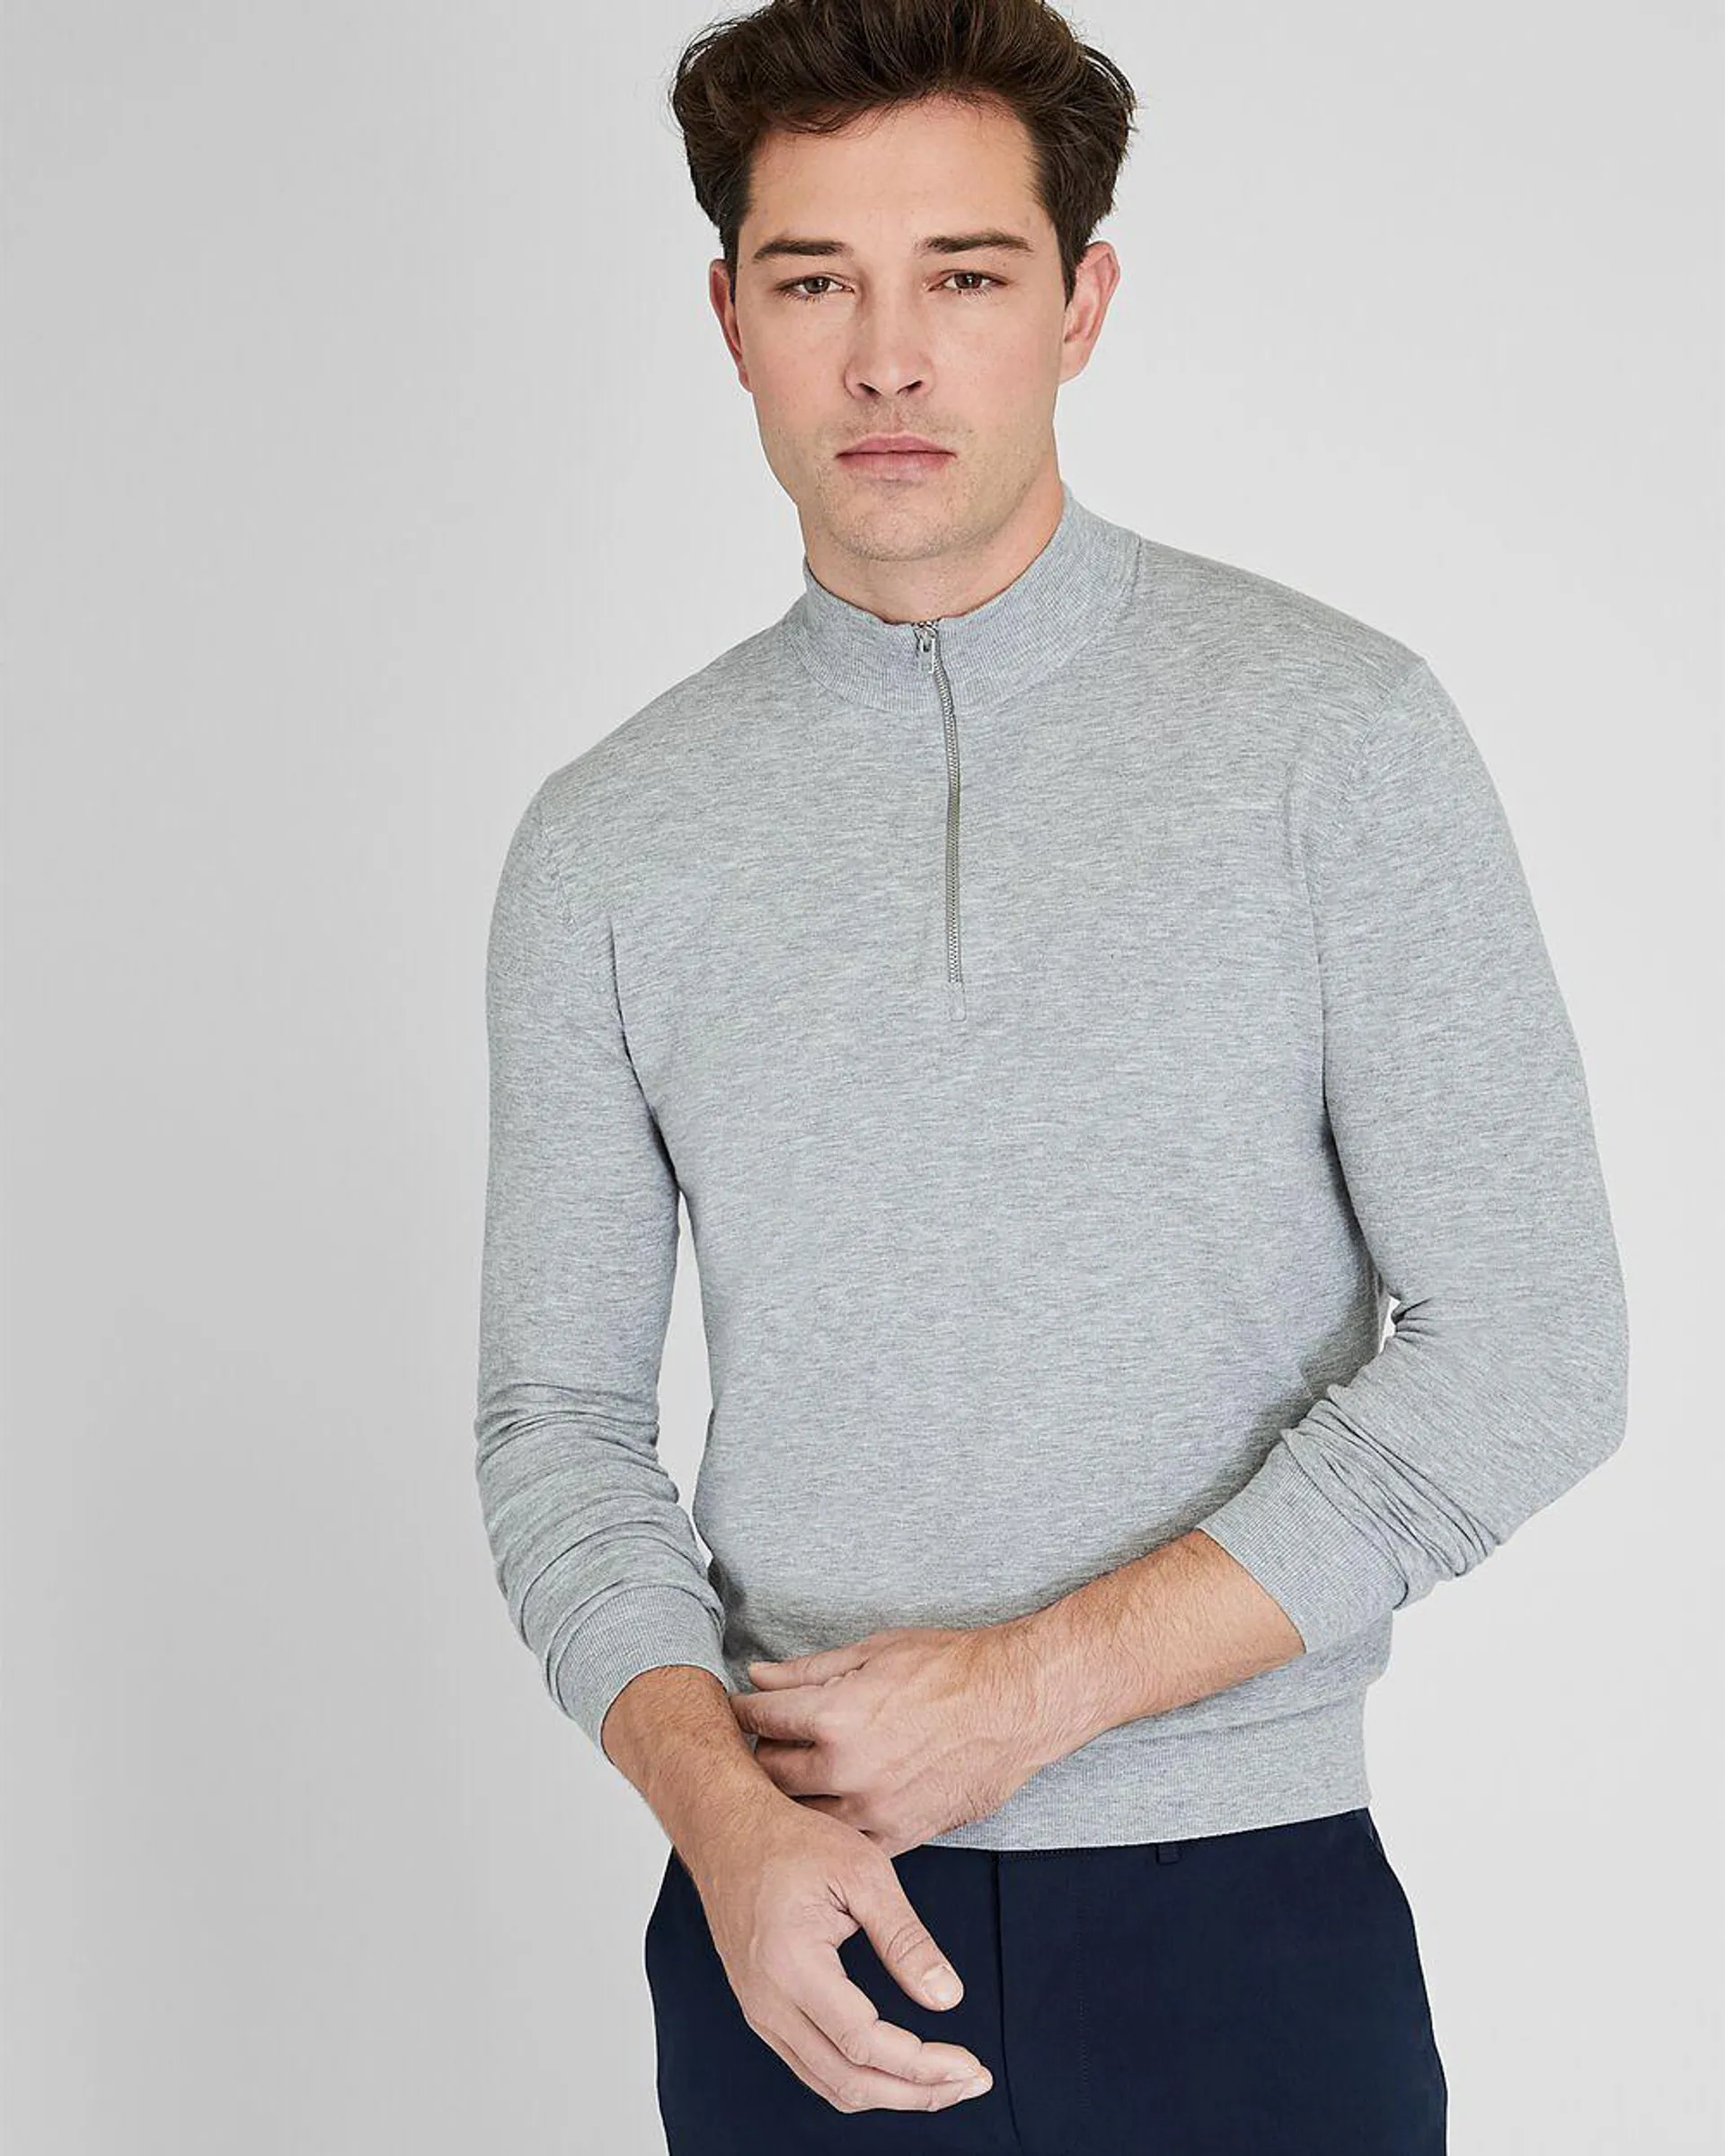 Long Sleeve Tech Quarter Zip Sweater